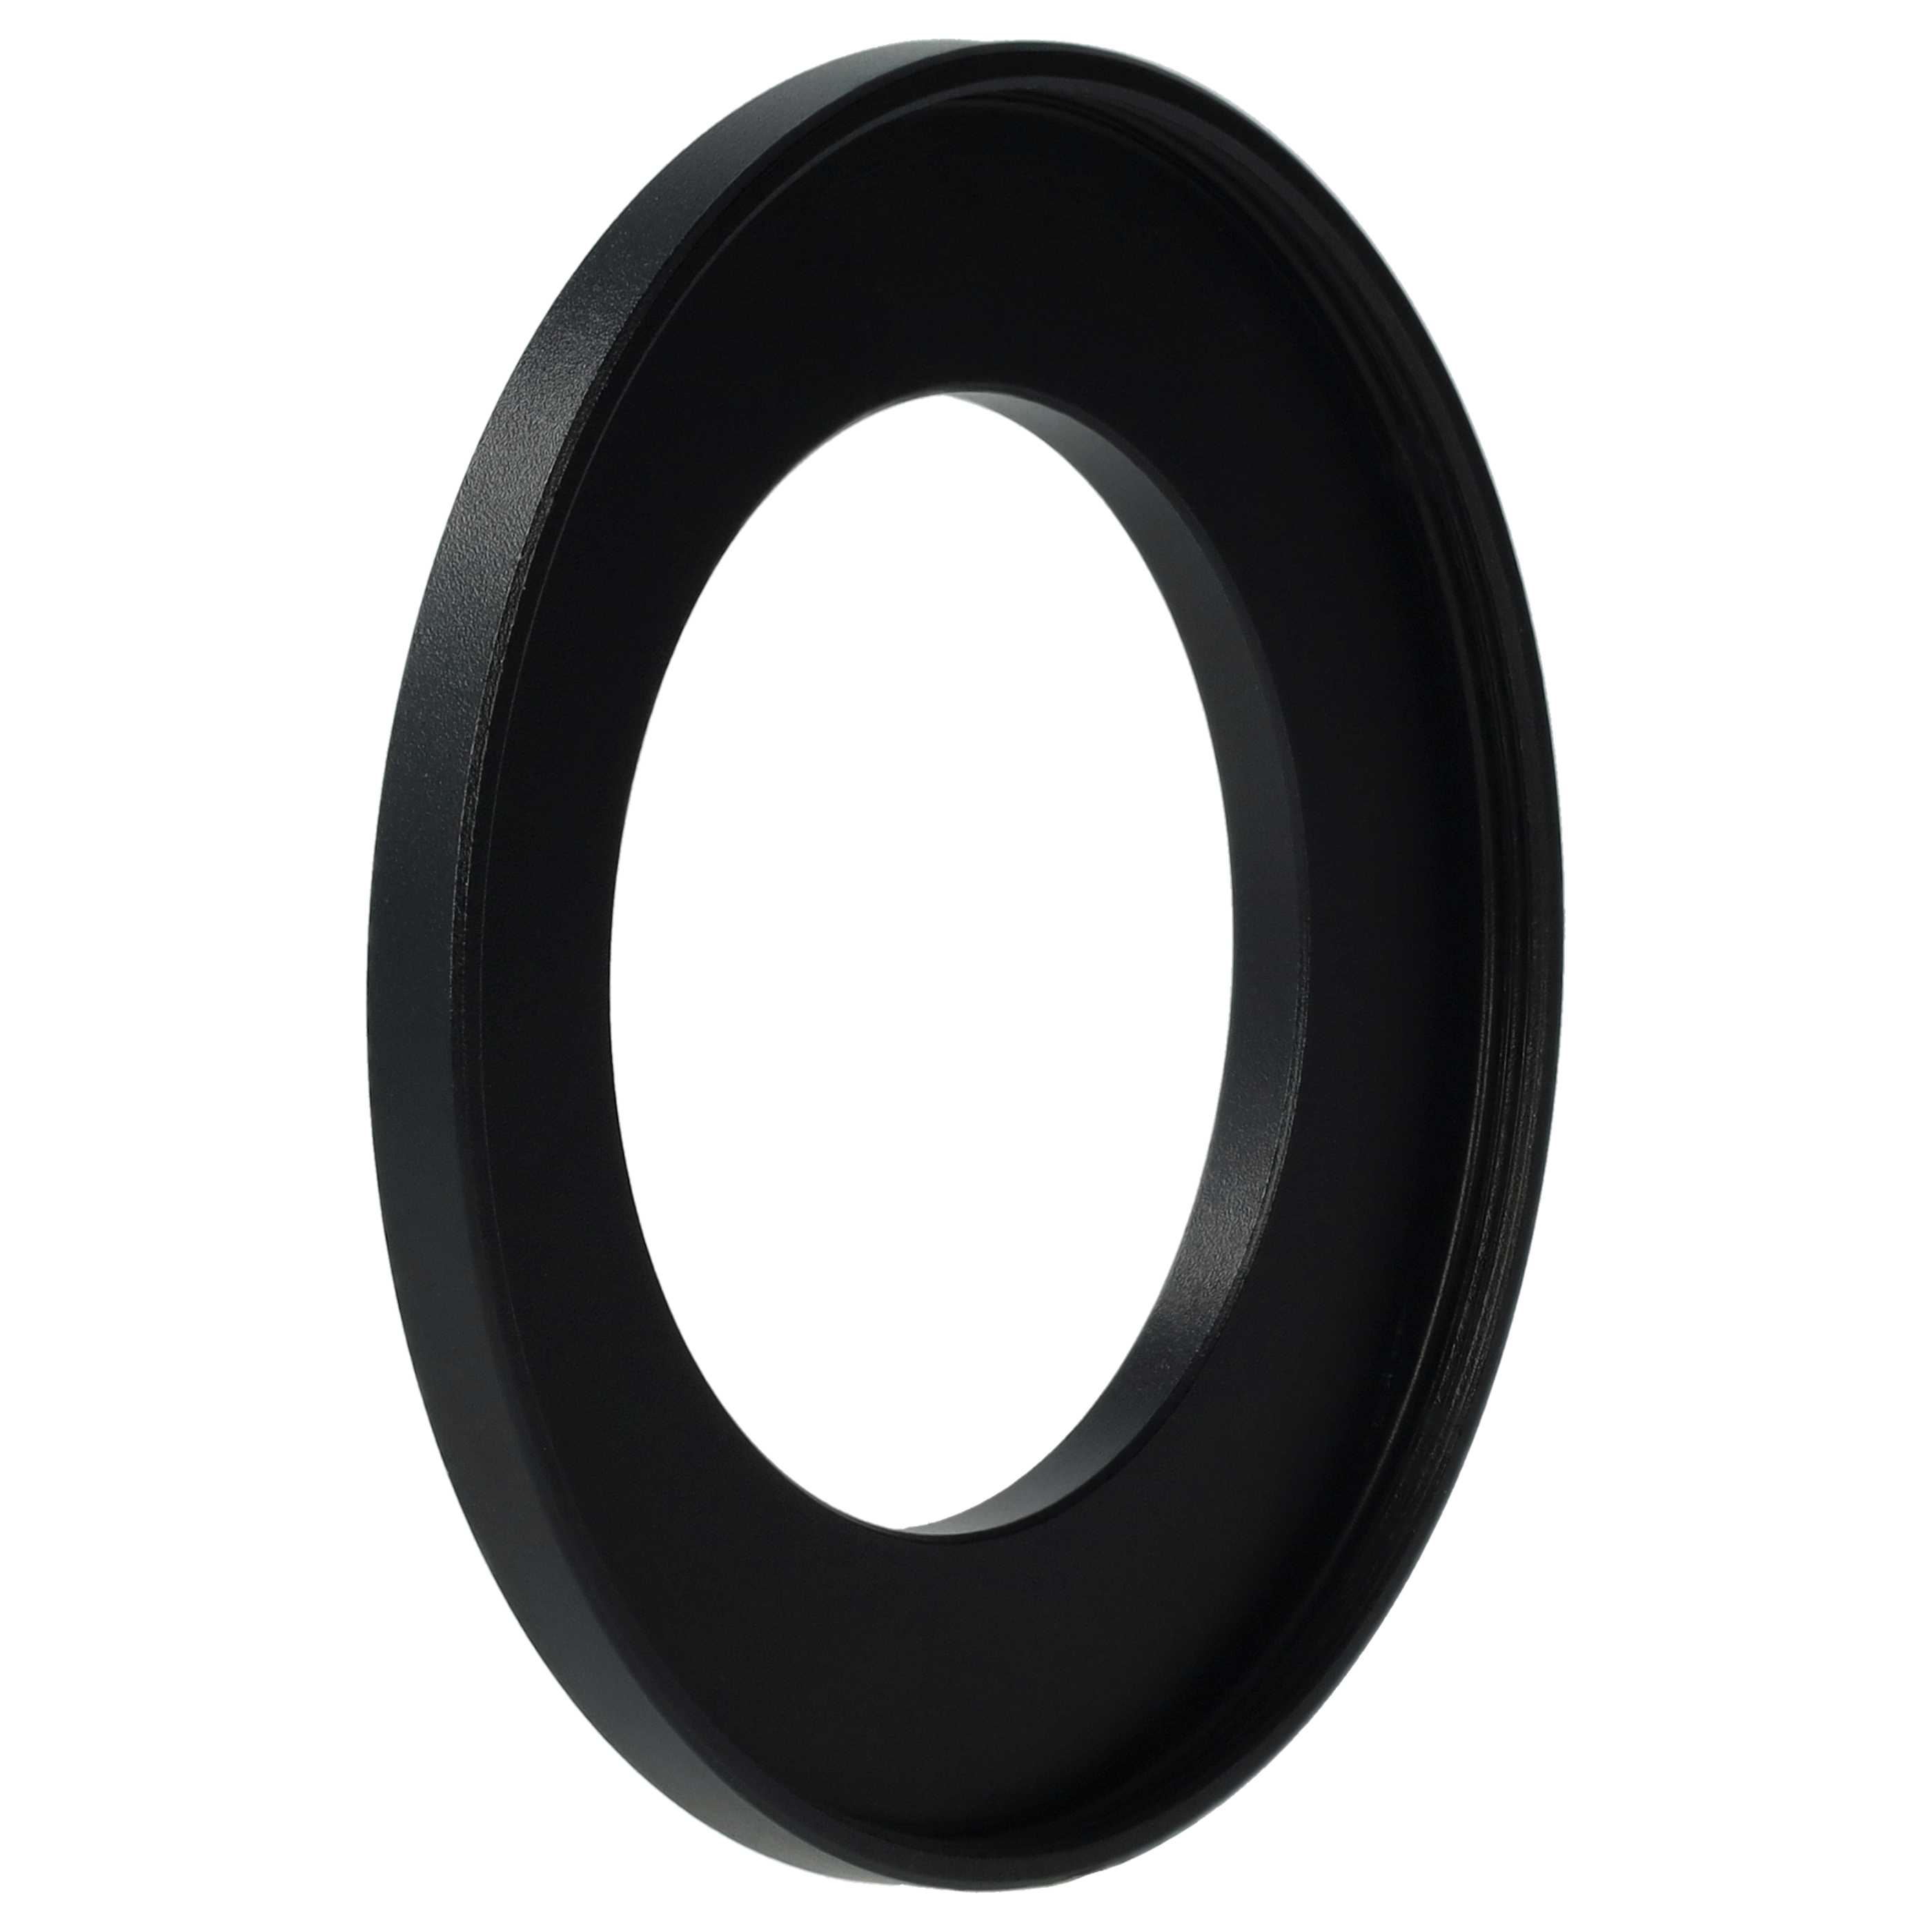 Step-Up-Ring Adapter 40,5 mm auf 58 mm passend für diverse Kamera-Objektive - Filteradapter